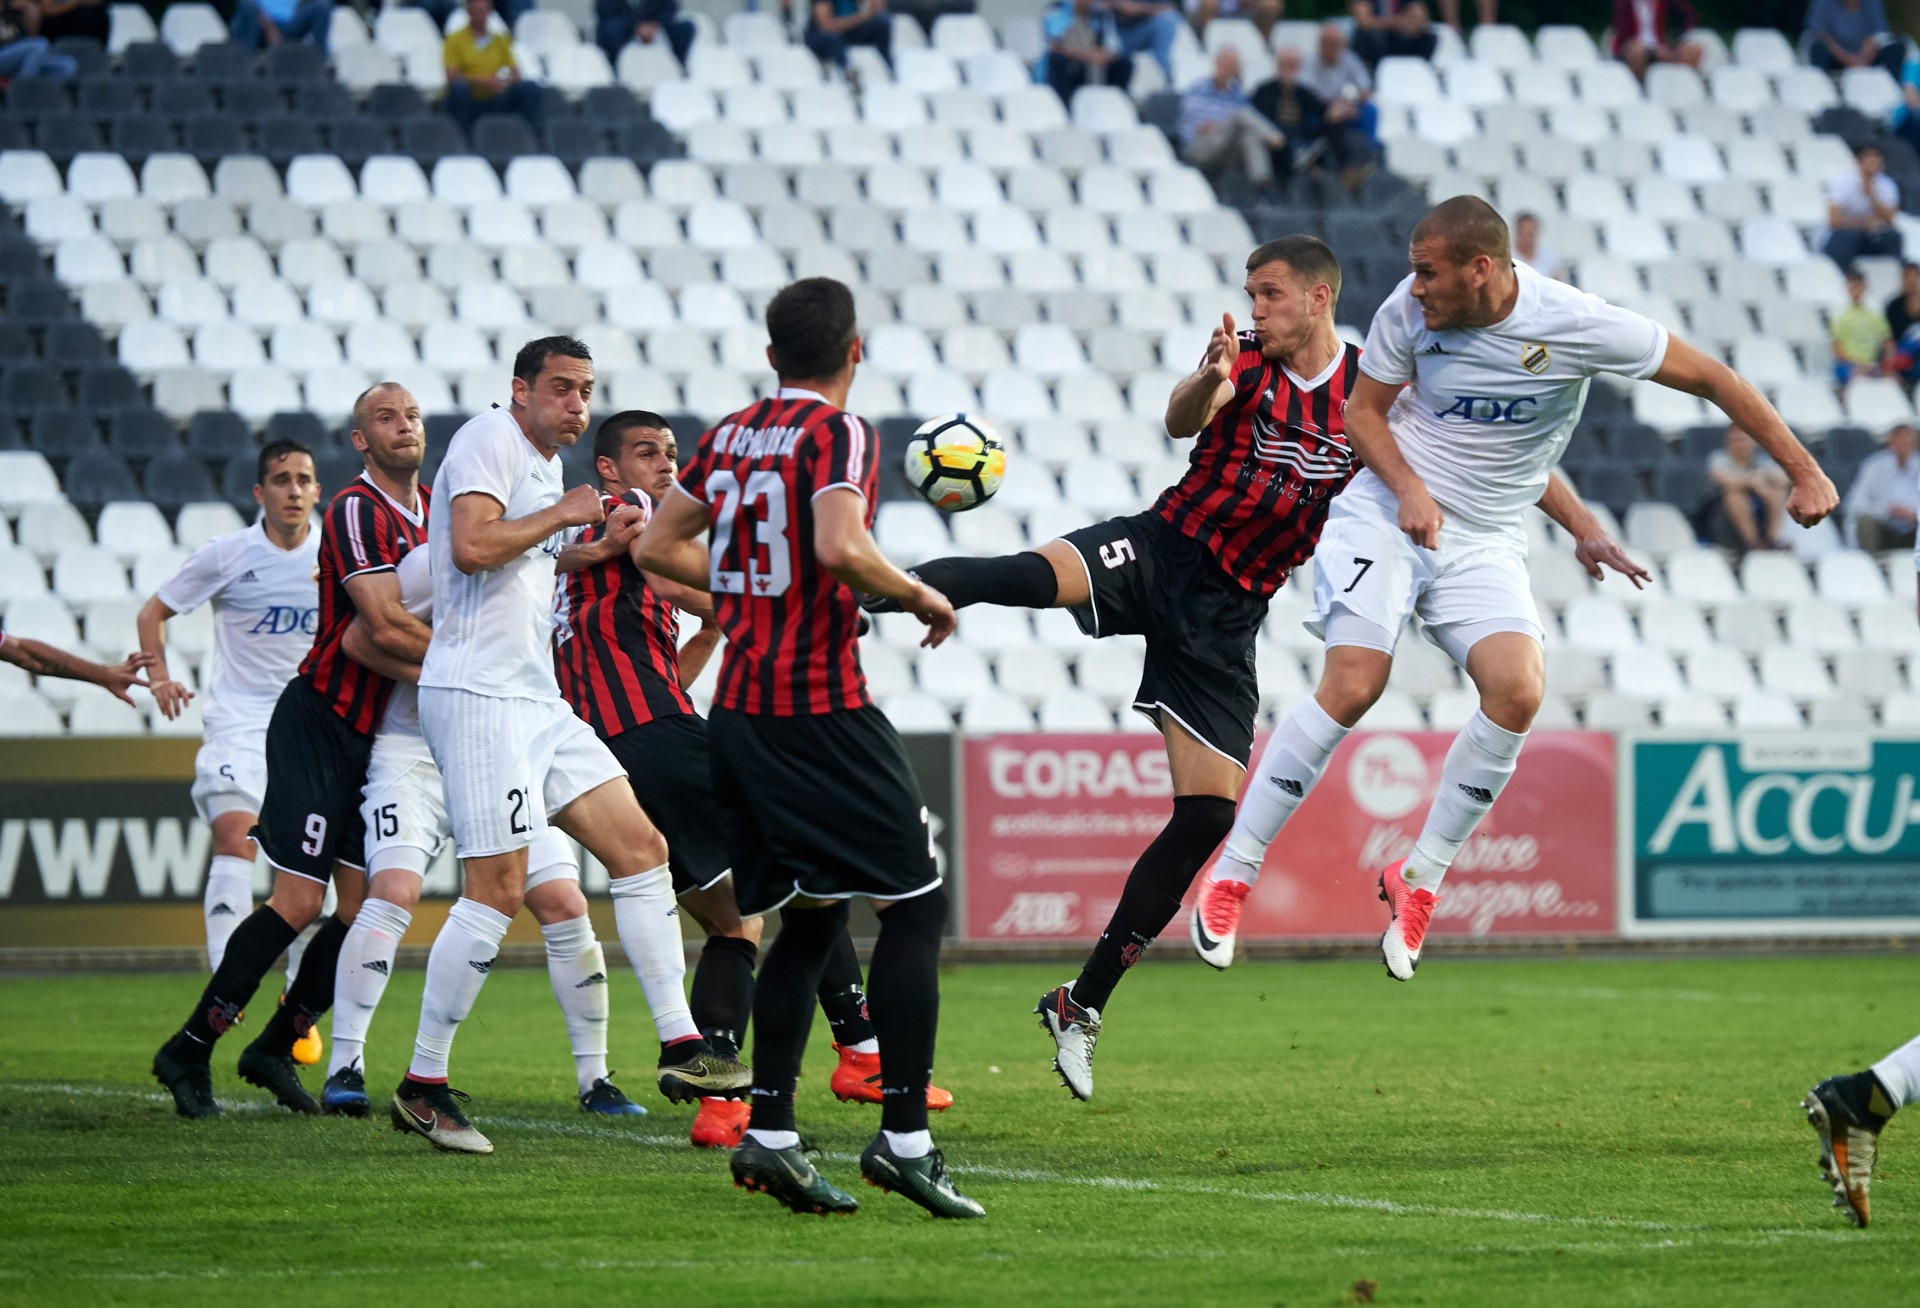 Mudrinski pokušava da postigne gol protiv Voždovca - Ognjen Mudrinski,Darko Puškarić,Miladin Stevanović | FkCukaricki